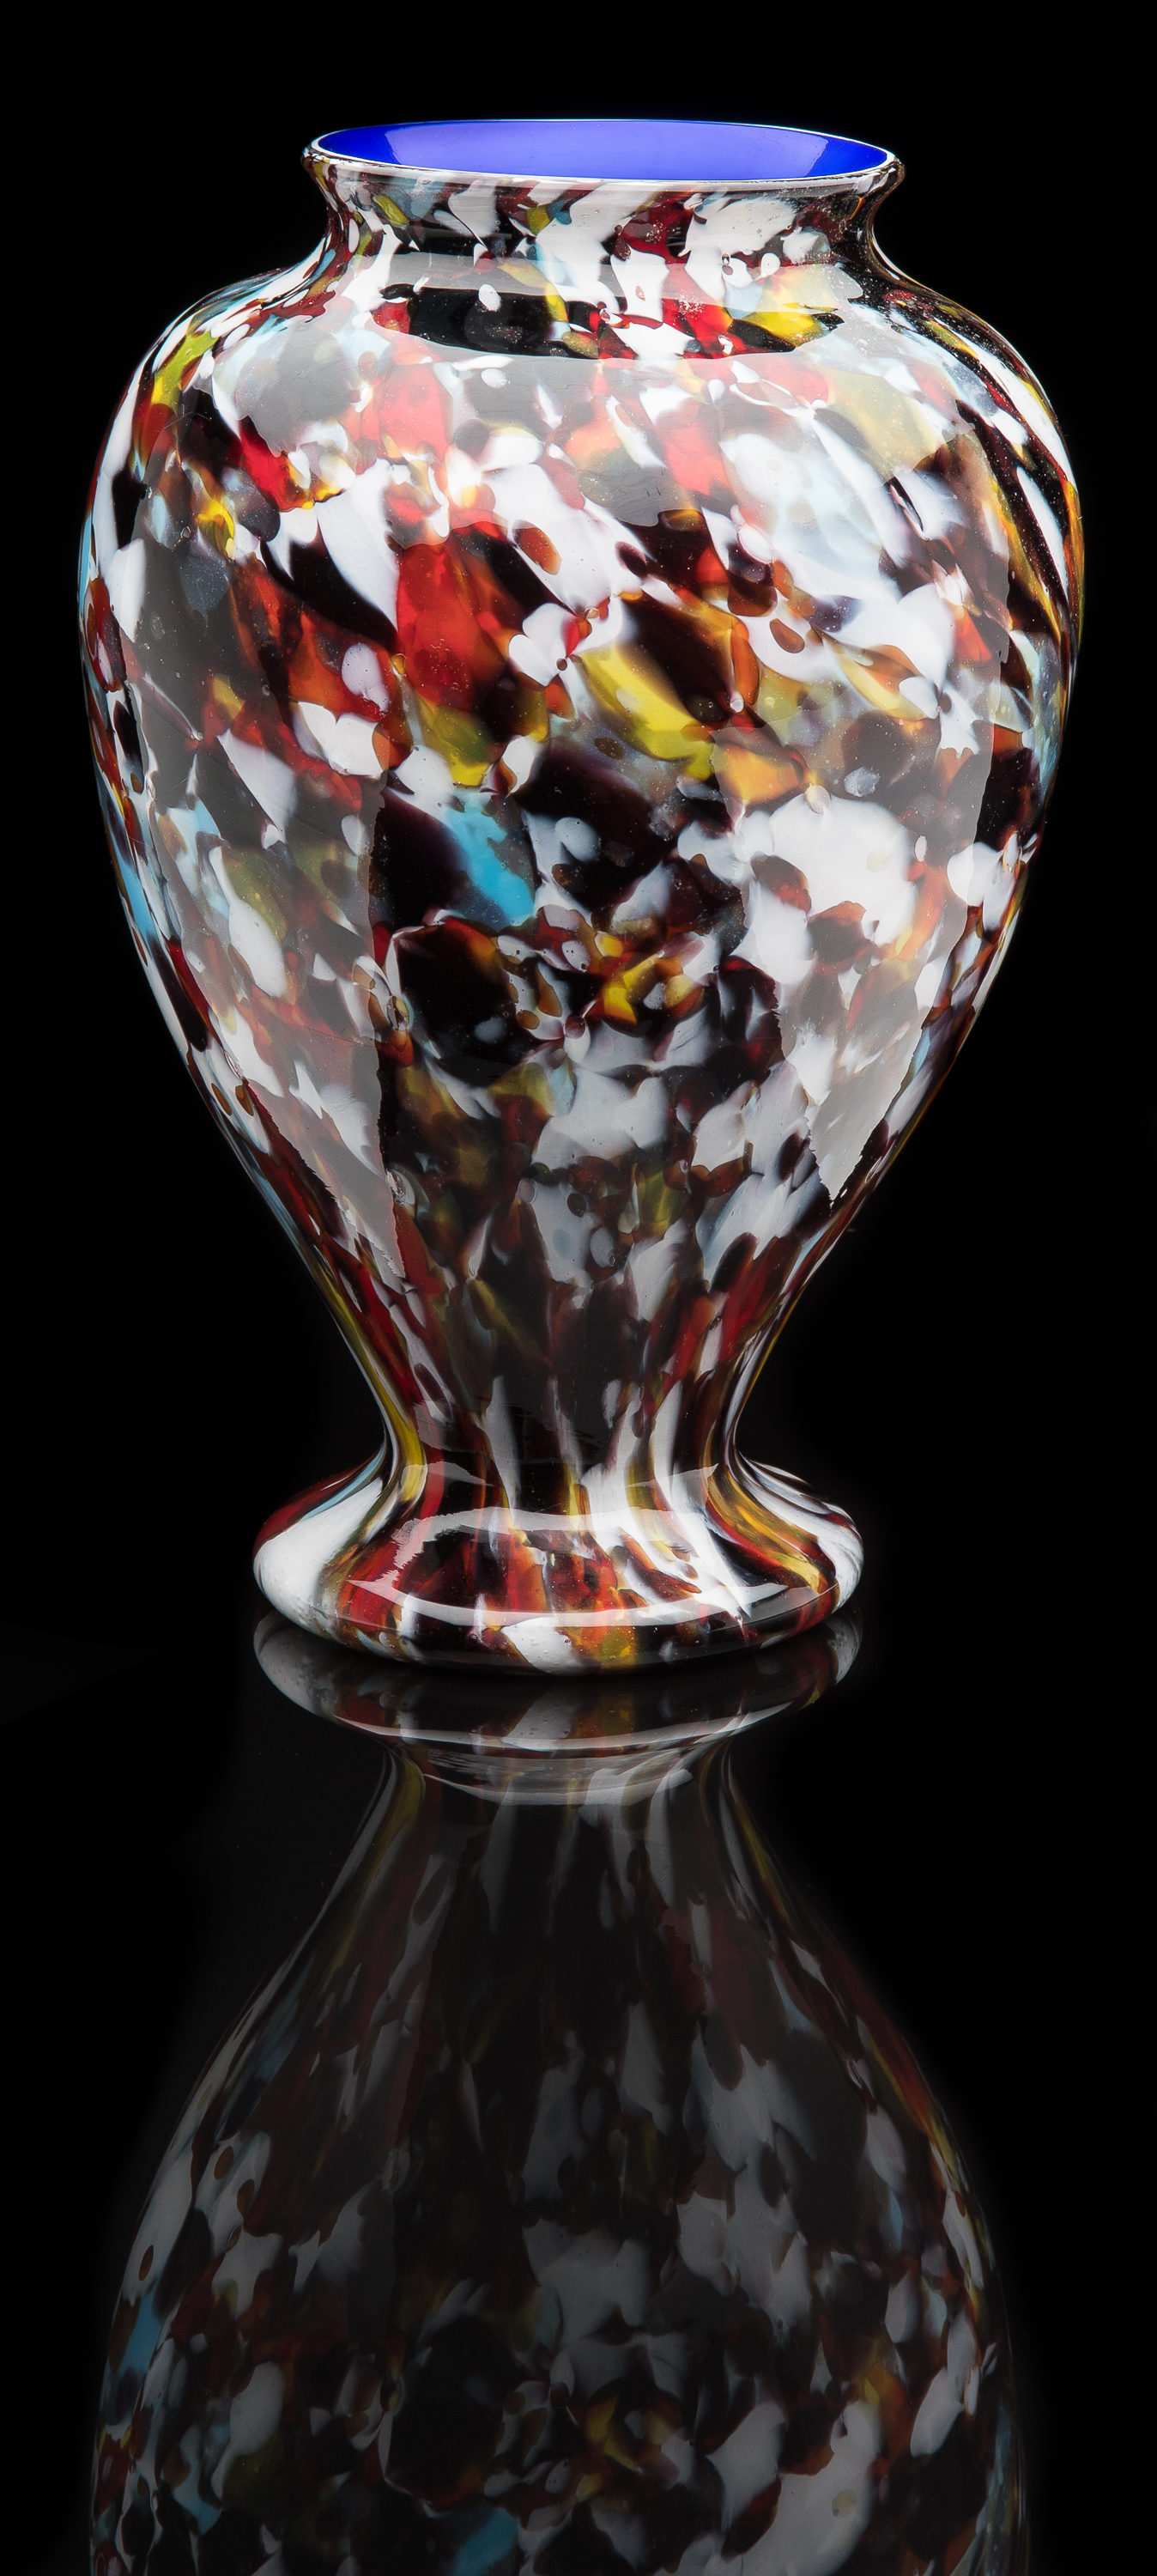  Francesco Ferro e Figlio,  Multicolored Macchie Vase  (circa 1890, glass, 12.5 inches), VV.558 